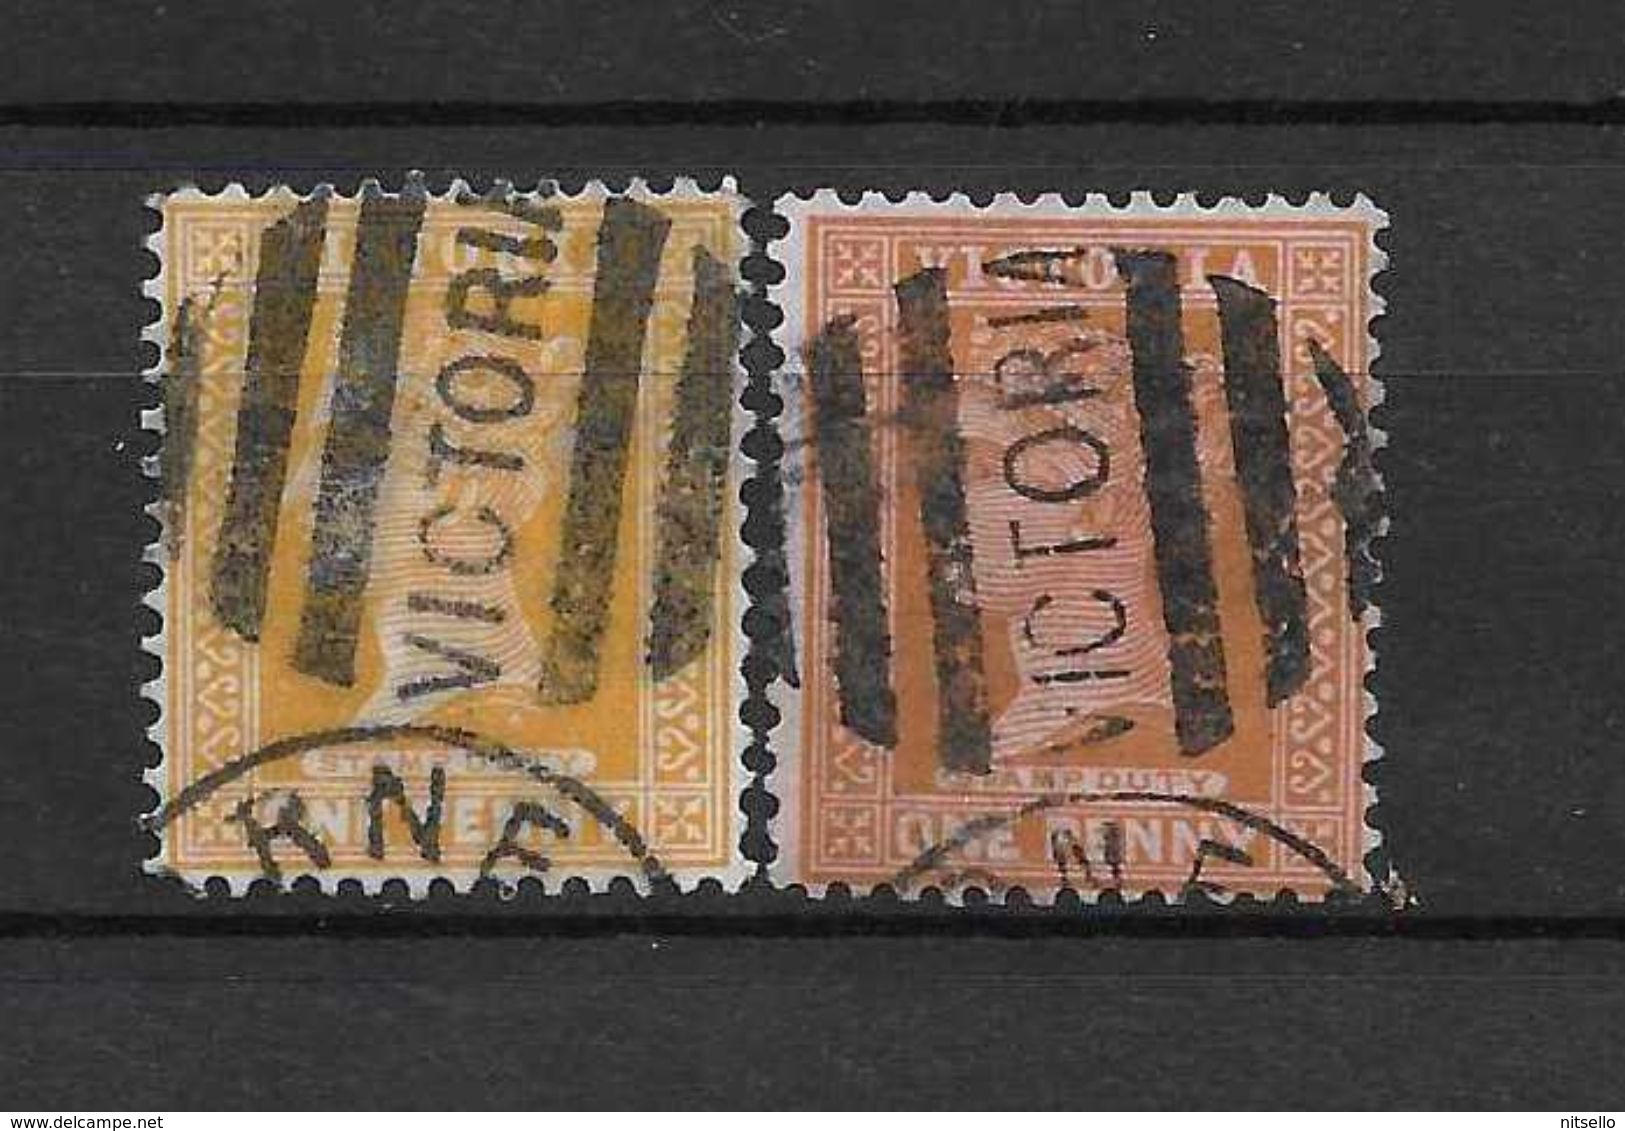 LOTE 1526   ///  (C006)  AUSTRALIA   VICTORIA - MATASELLO PARRILLA - Used Stamps